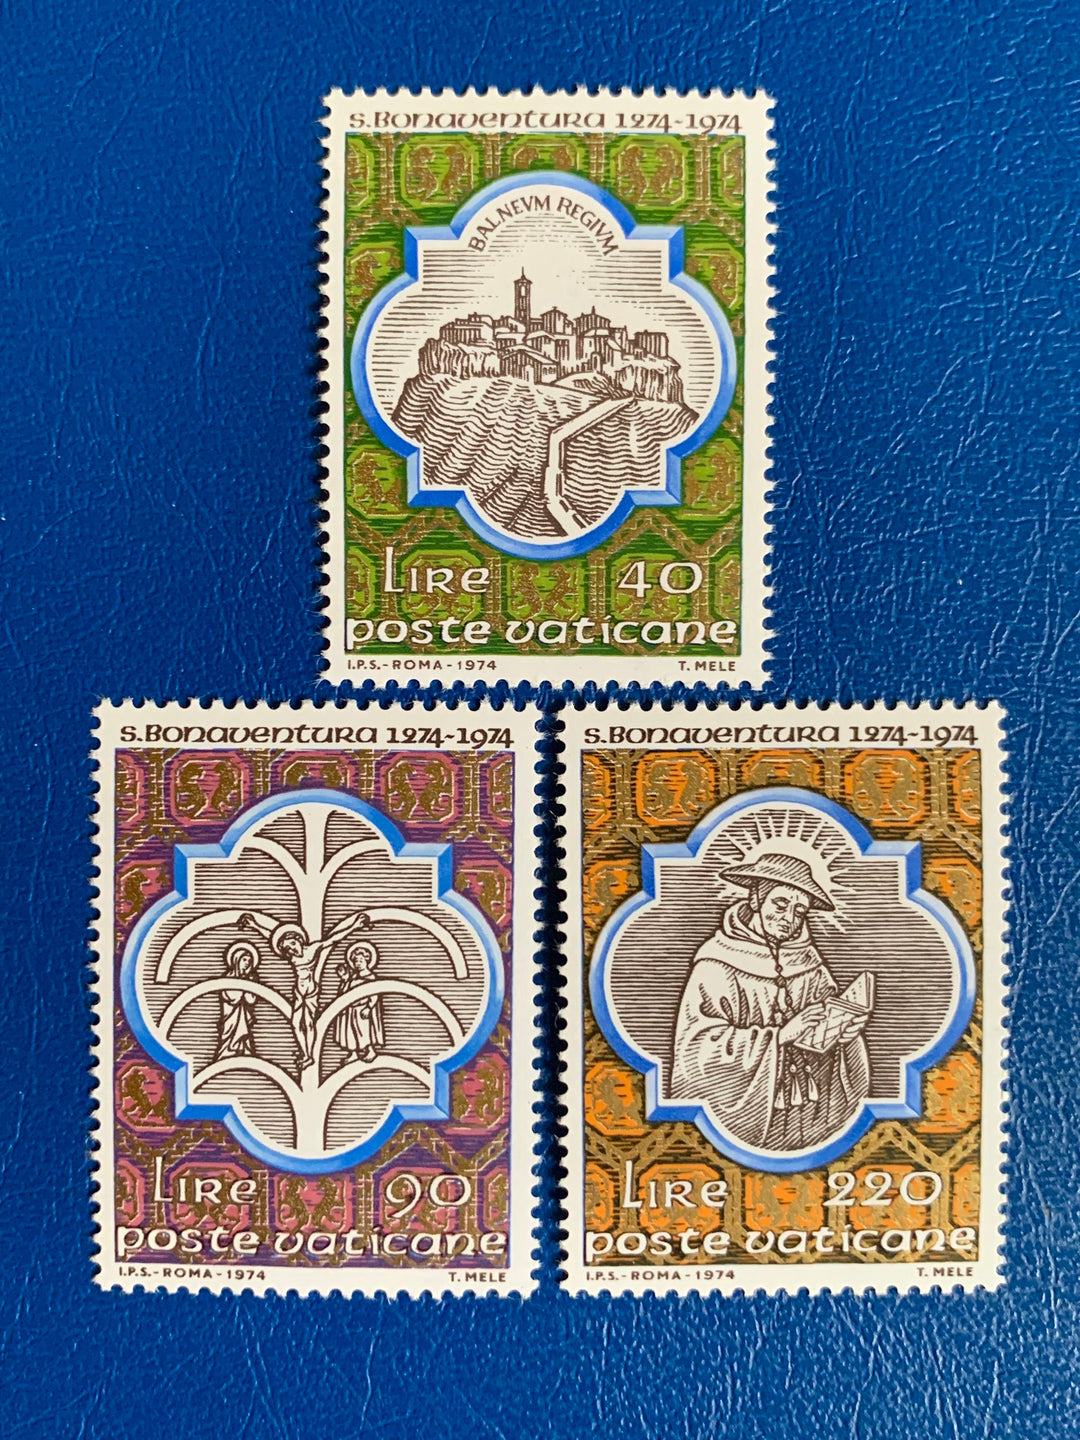 Vatican - Original Vintage Postage Stamps- 1974 - St. Bonaventure - for the collector, artist or crafter